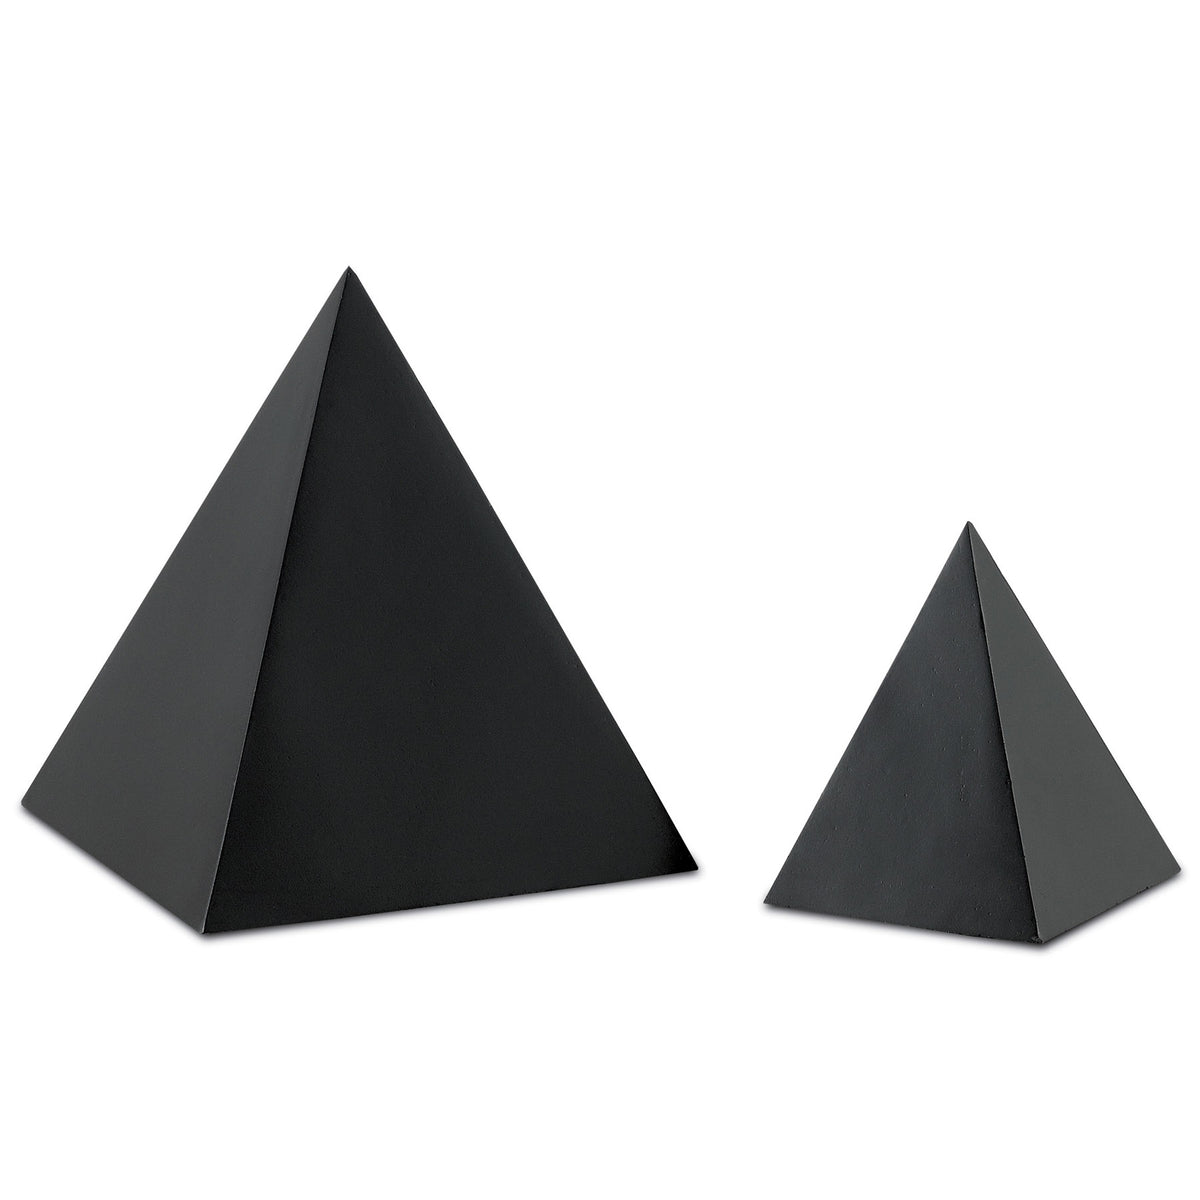 Black Small Concrete Pyramid